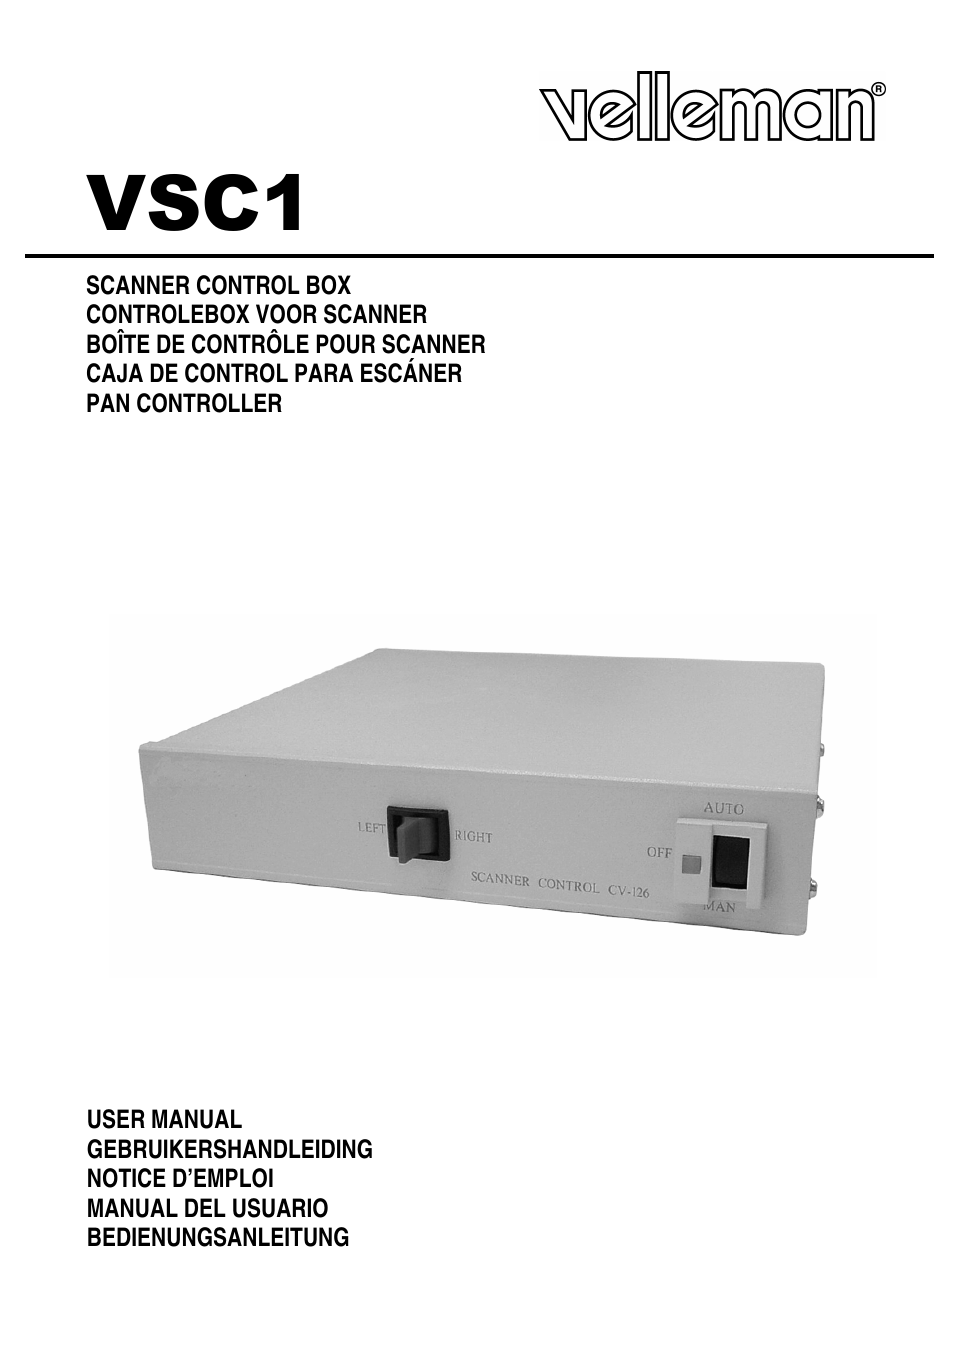 VSC1